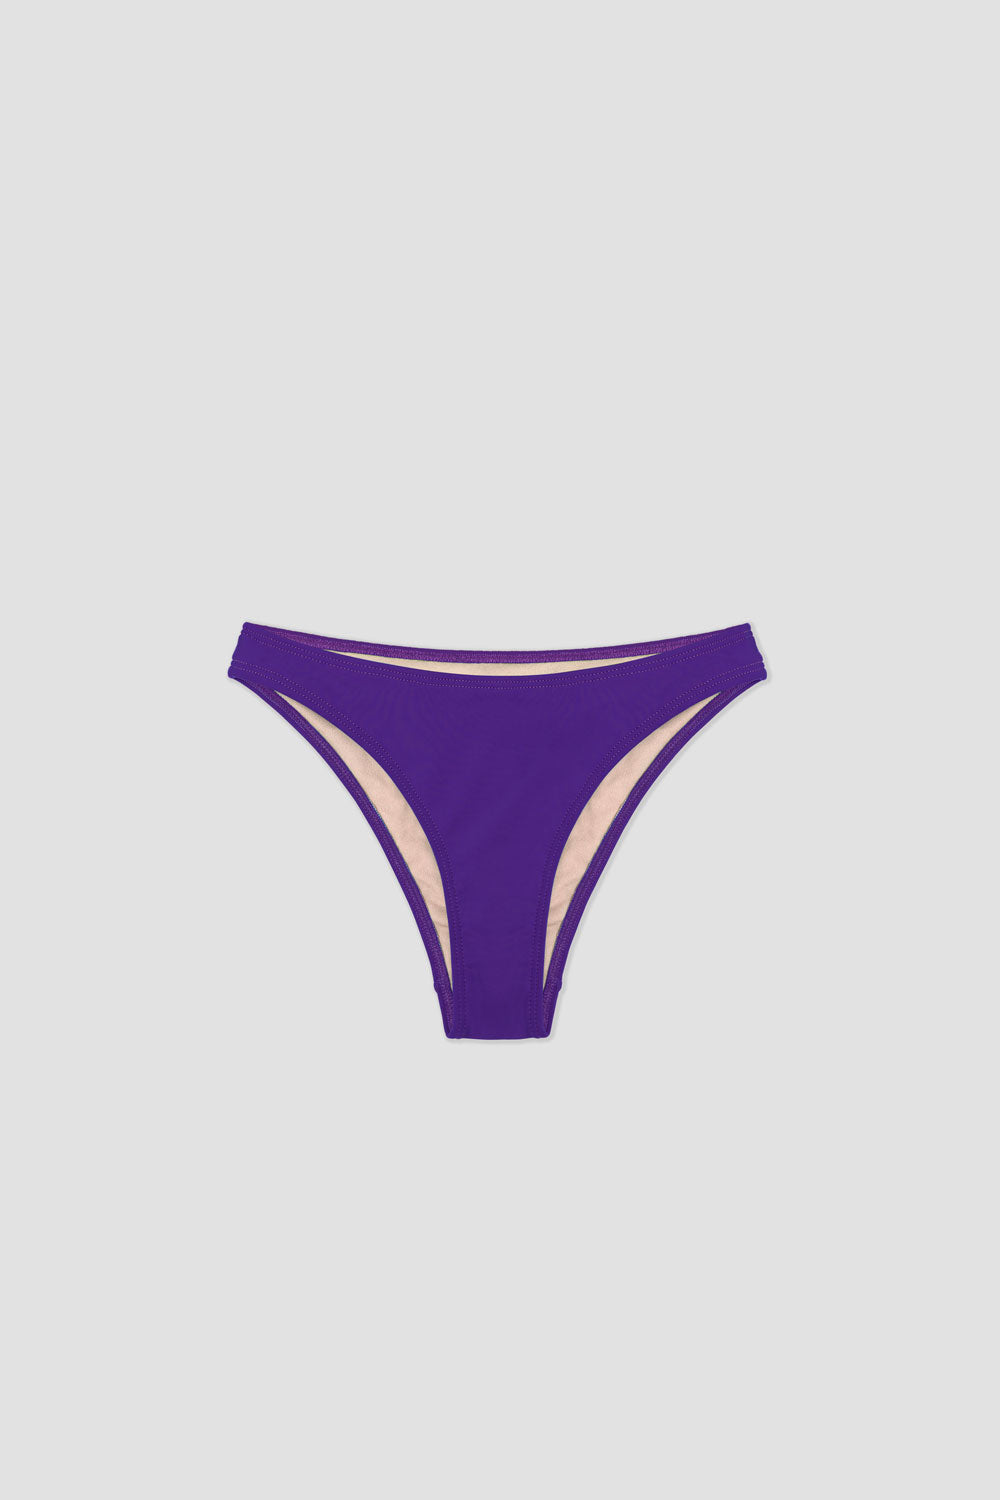 Yavi Bikini Bottom